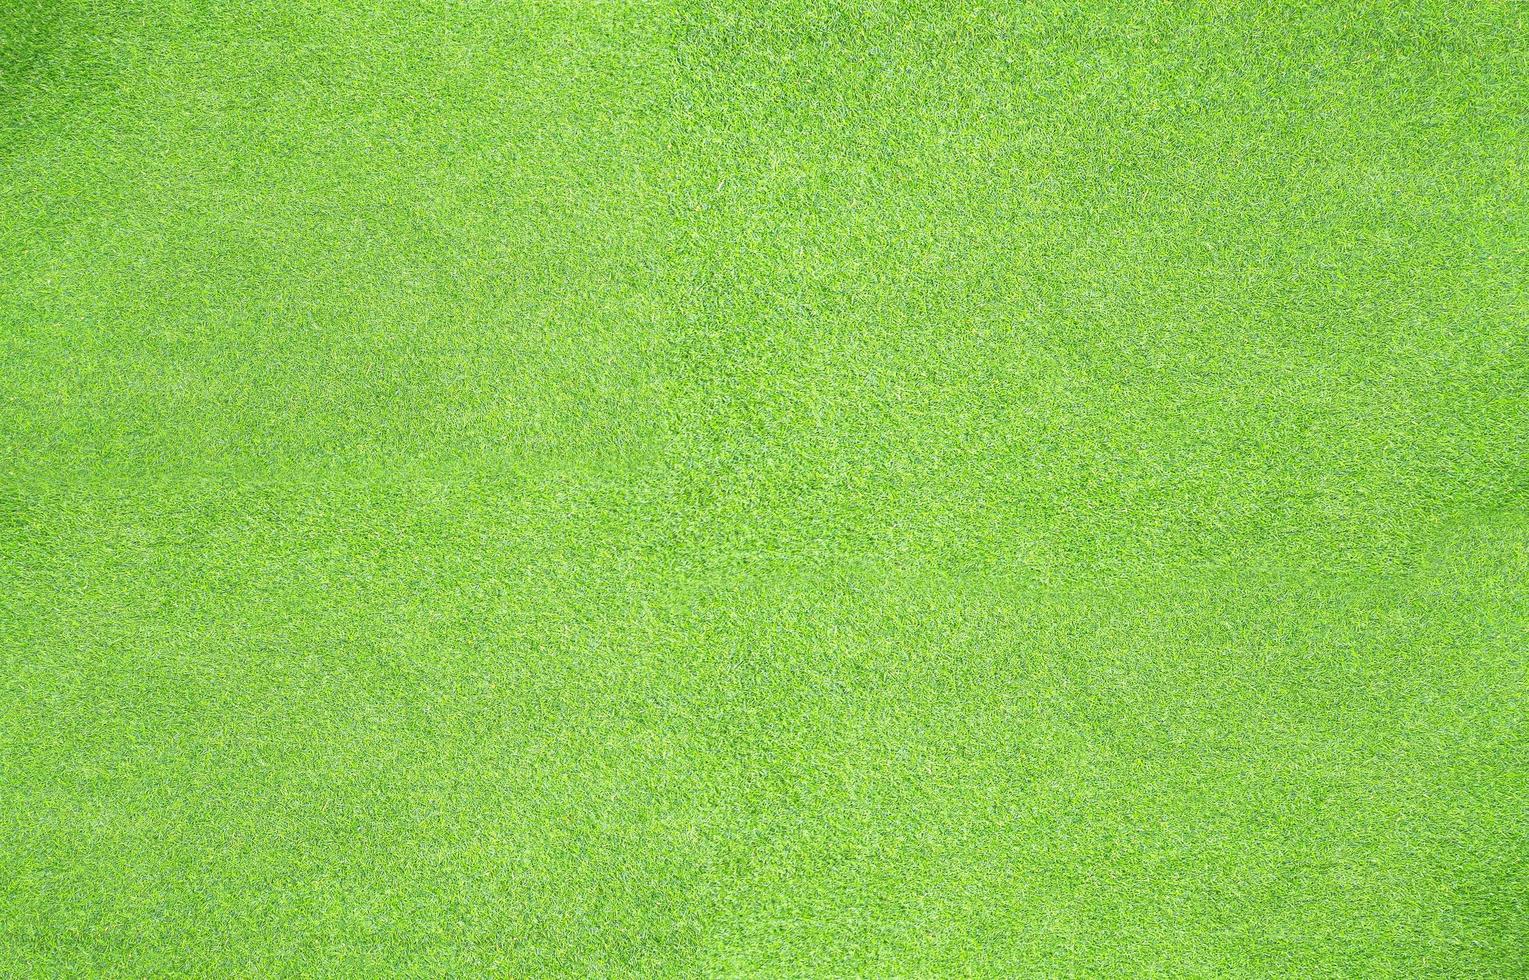 fundo de folha verde grama artificial foto